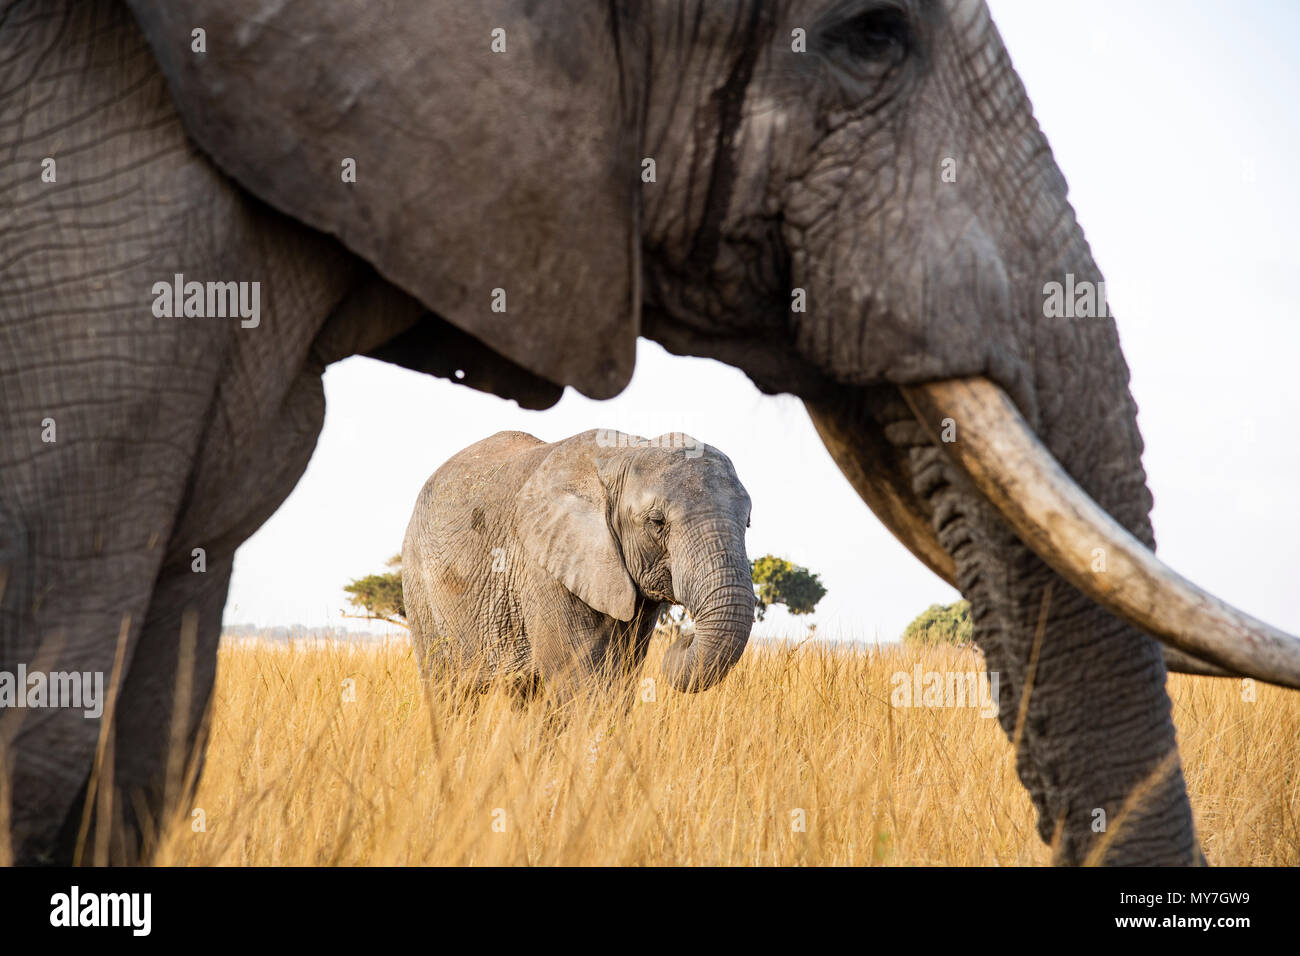 El elefante africano (Loxodonta africana), la conservación de la vida silvestre, Imire Zimbabwe Foto de stock